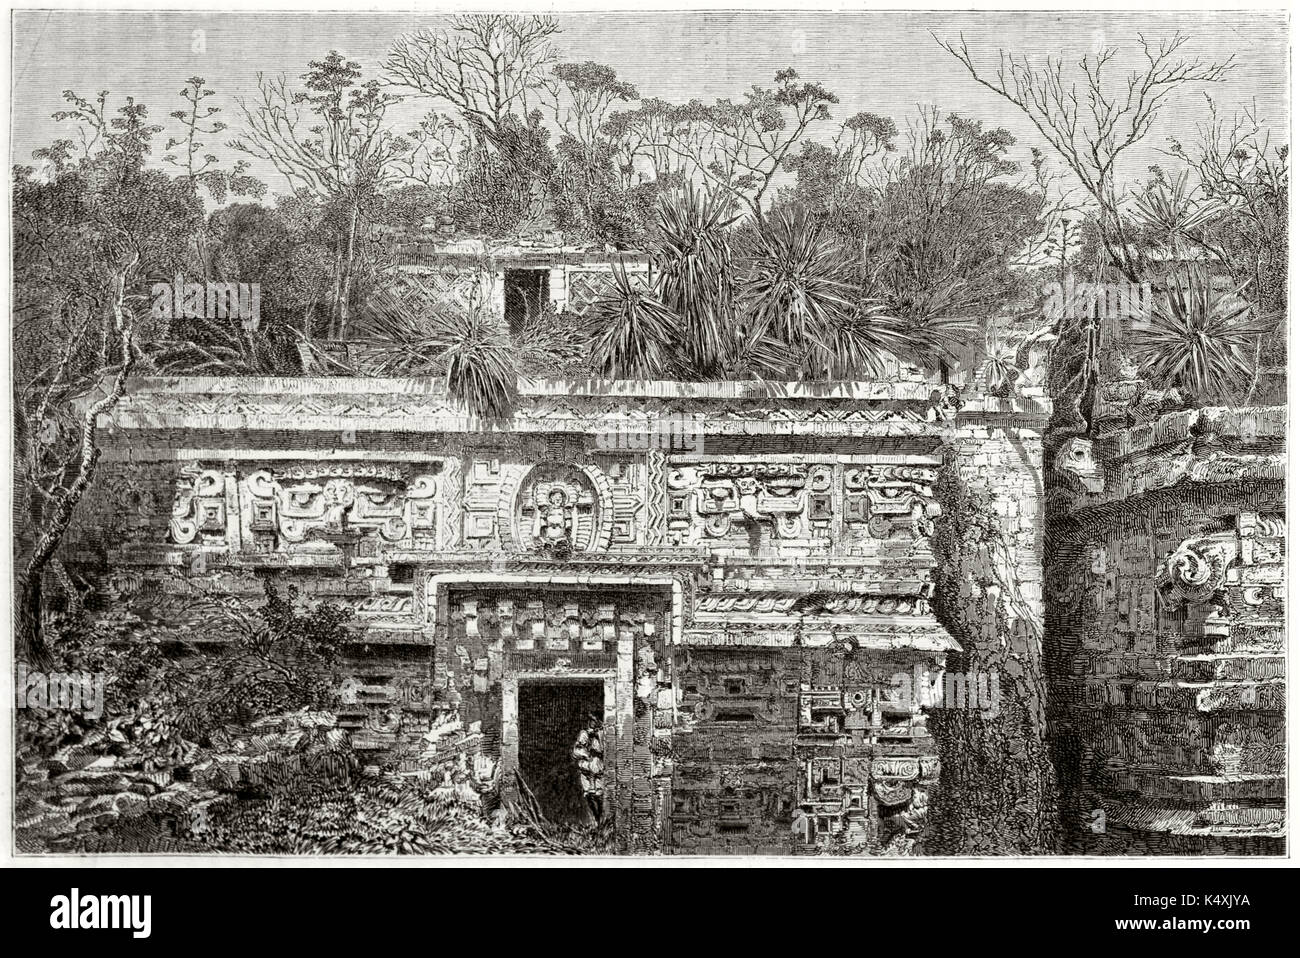 Vorderansicht des Ruinen einer alten Maya Tempel aus dichten Vegetation im Dschungel. Chiche-Itza Maya archäologische Stätte Yucatan Mexiko. Durch Guaiaud auf Le Tour du Monde Paris 1862 Stockfoto